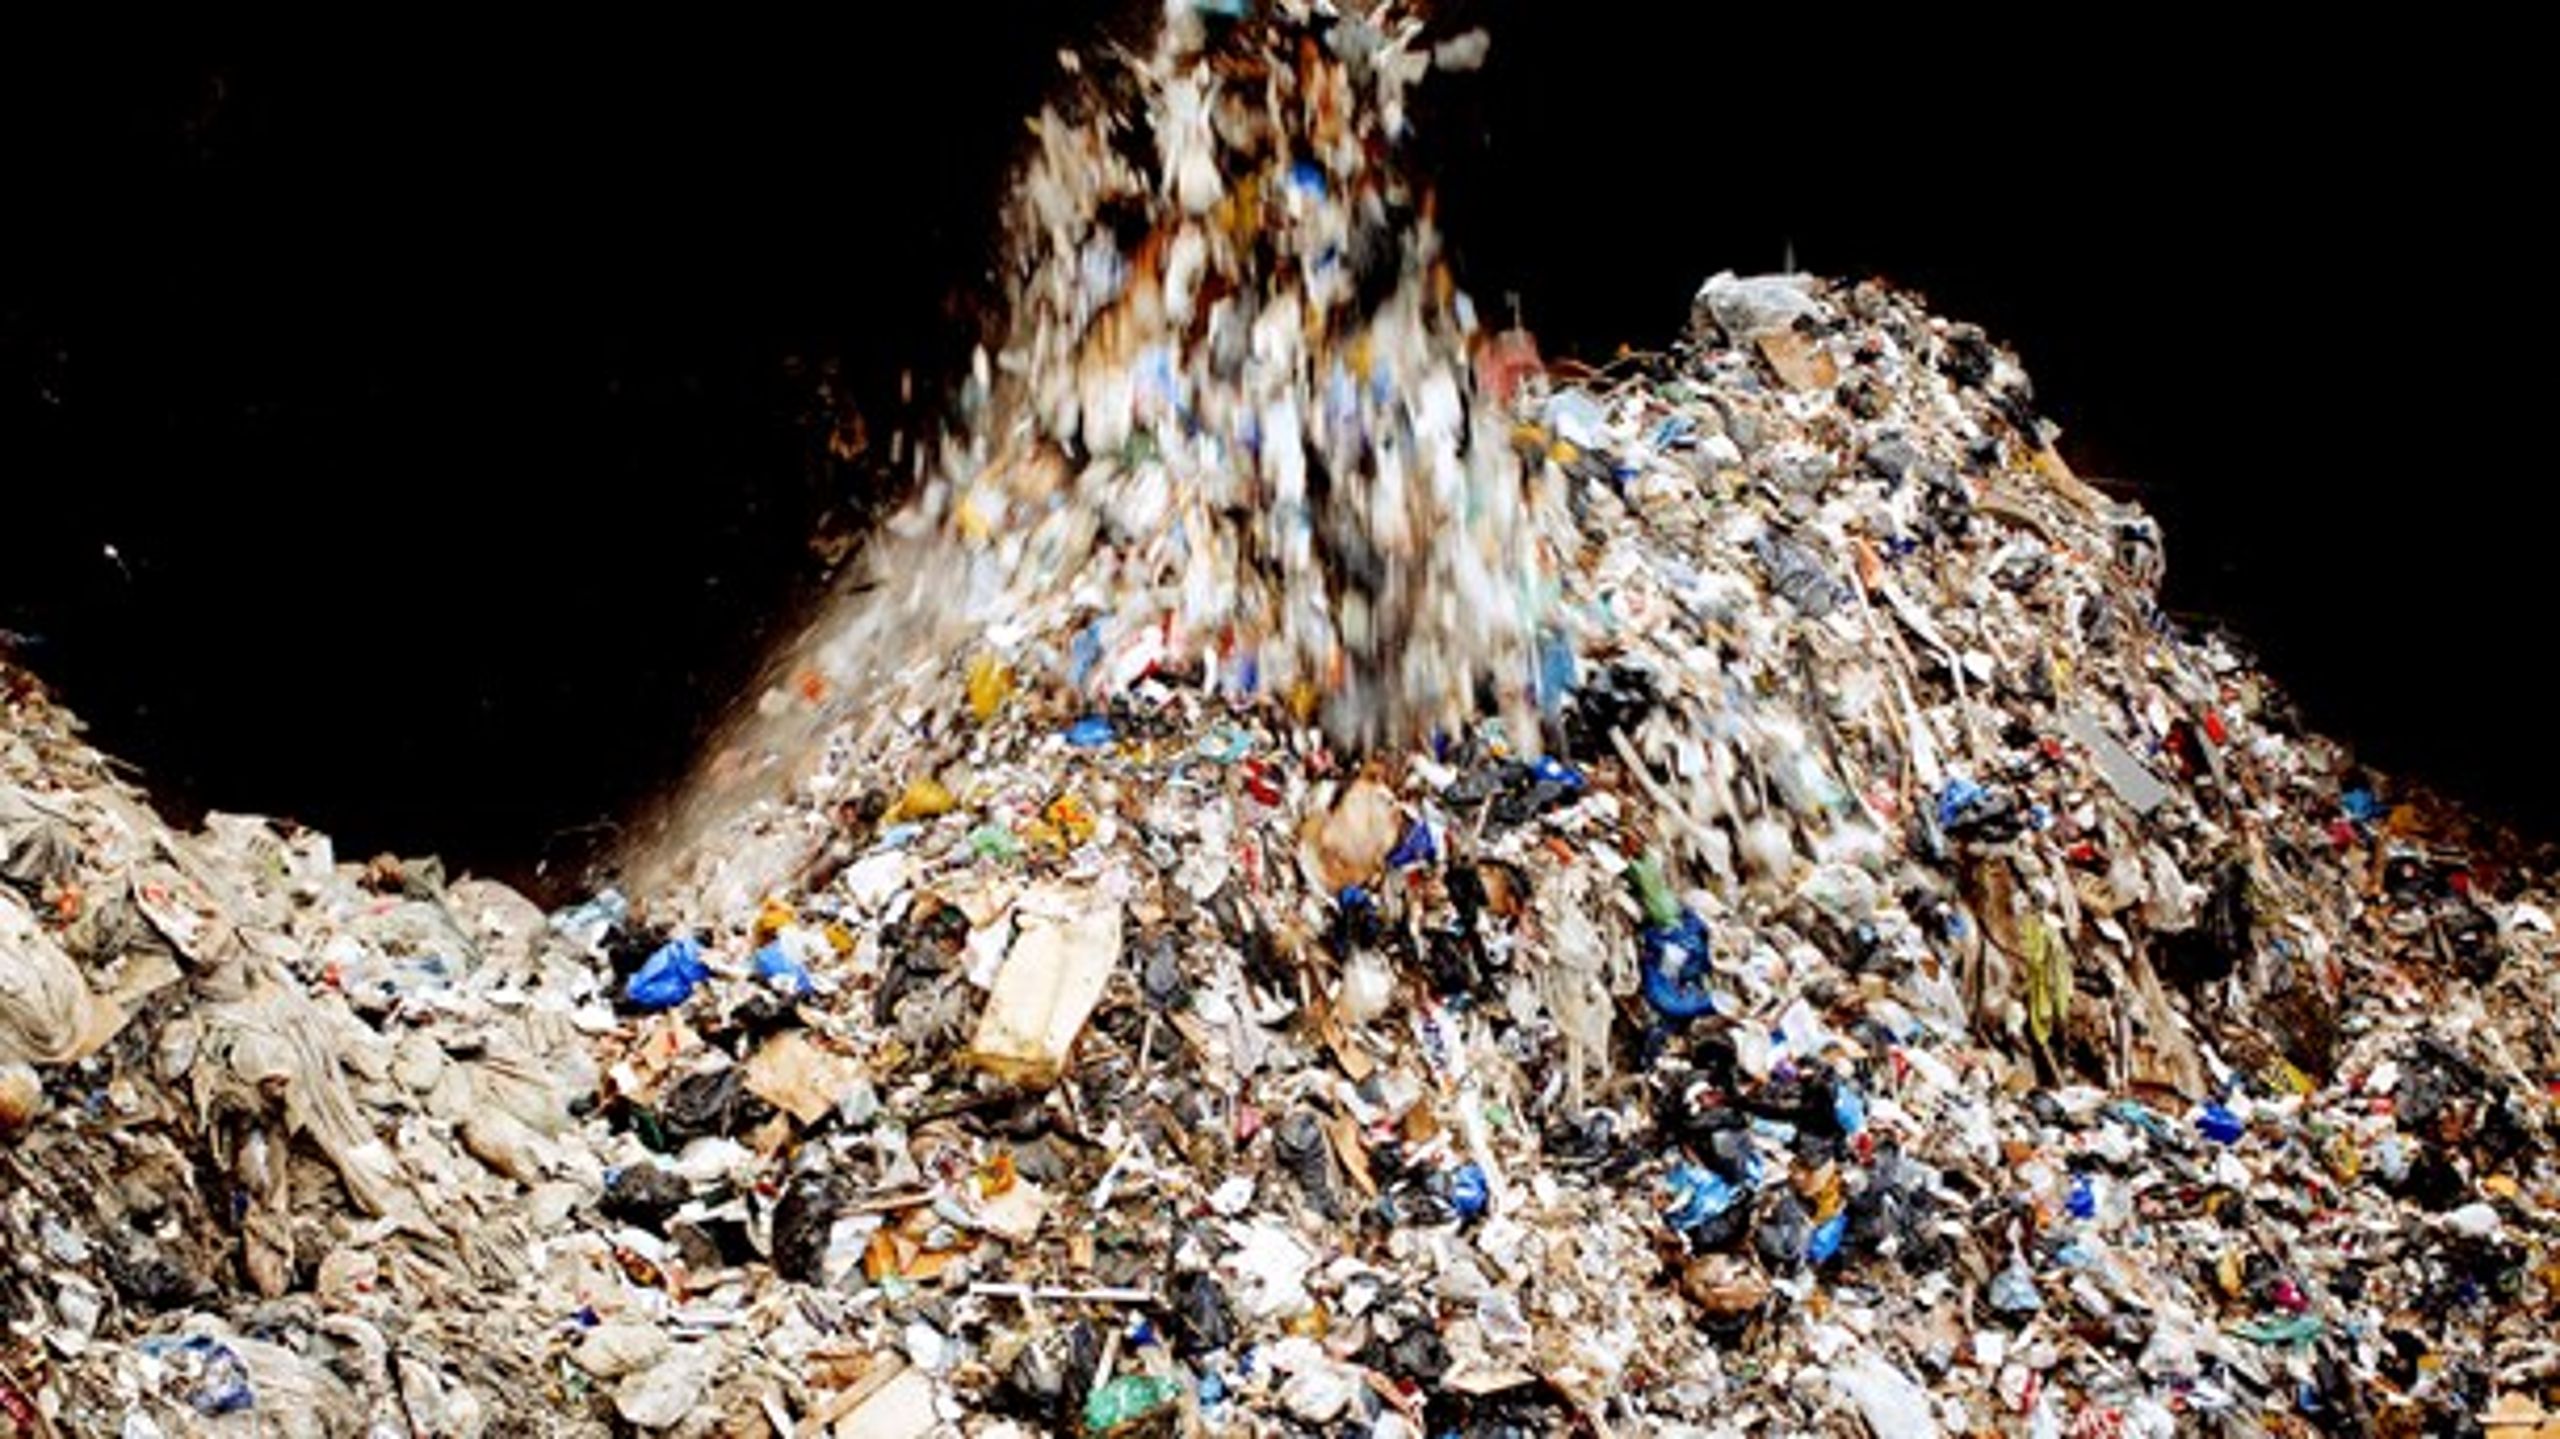 Der er kun en forretning i affald, hvis vi bliver ved med at producere større mængder affald, skriver Theresa Scavenius.